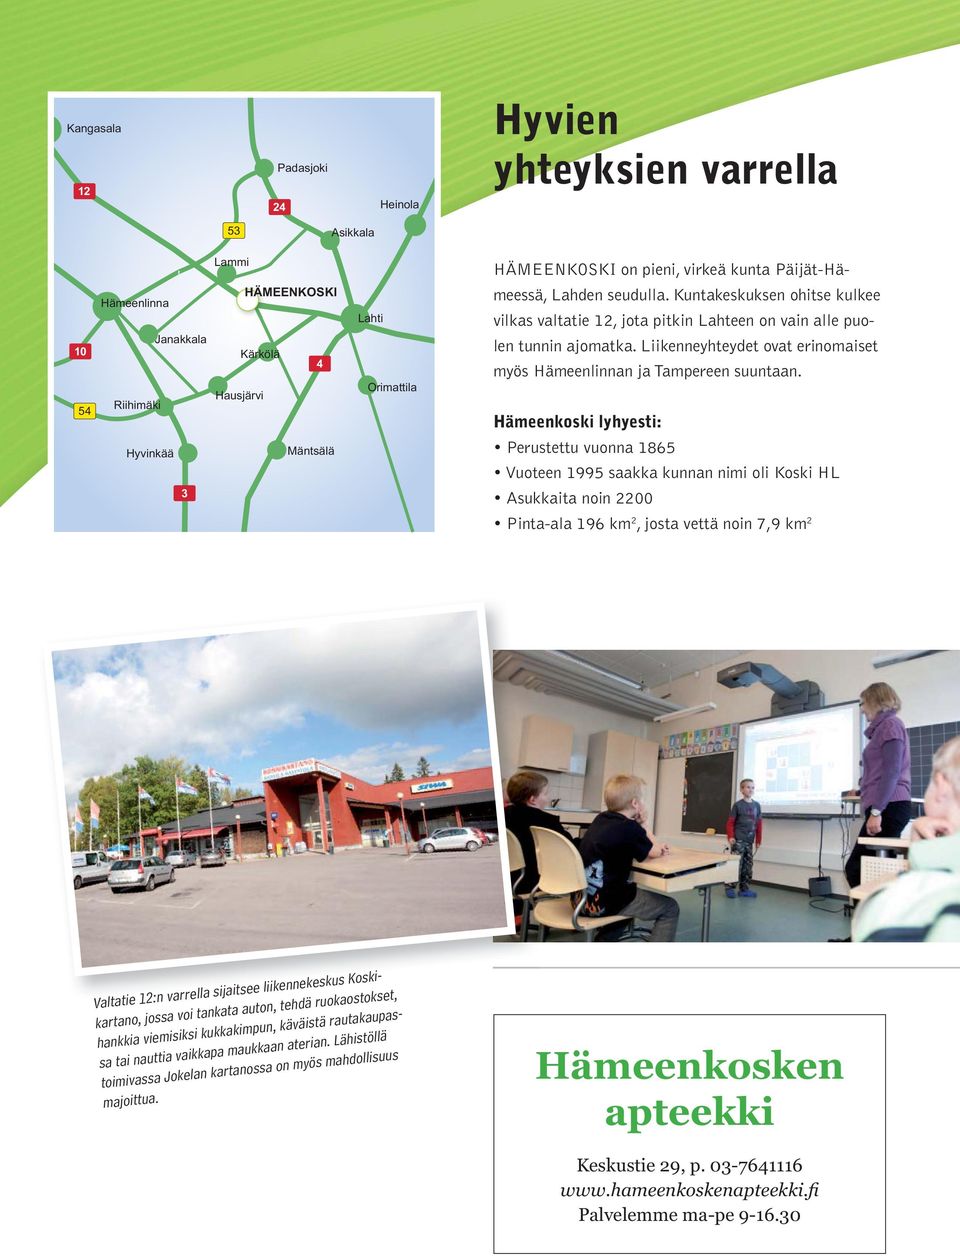 Liikenneyhteydet ovat erinomaiset myös Hämeenlinnan ja Tampereen suuntaan.